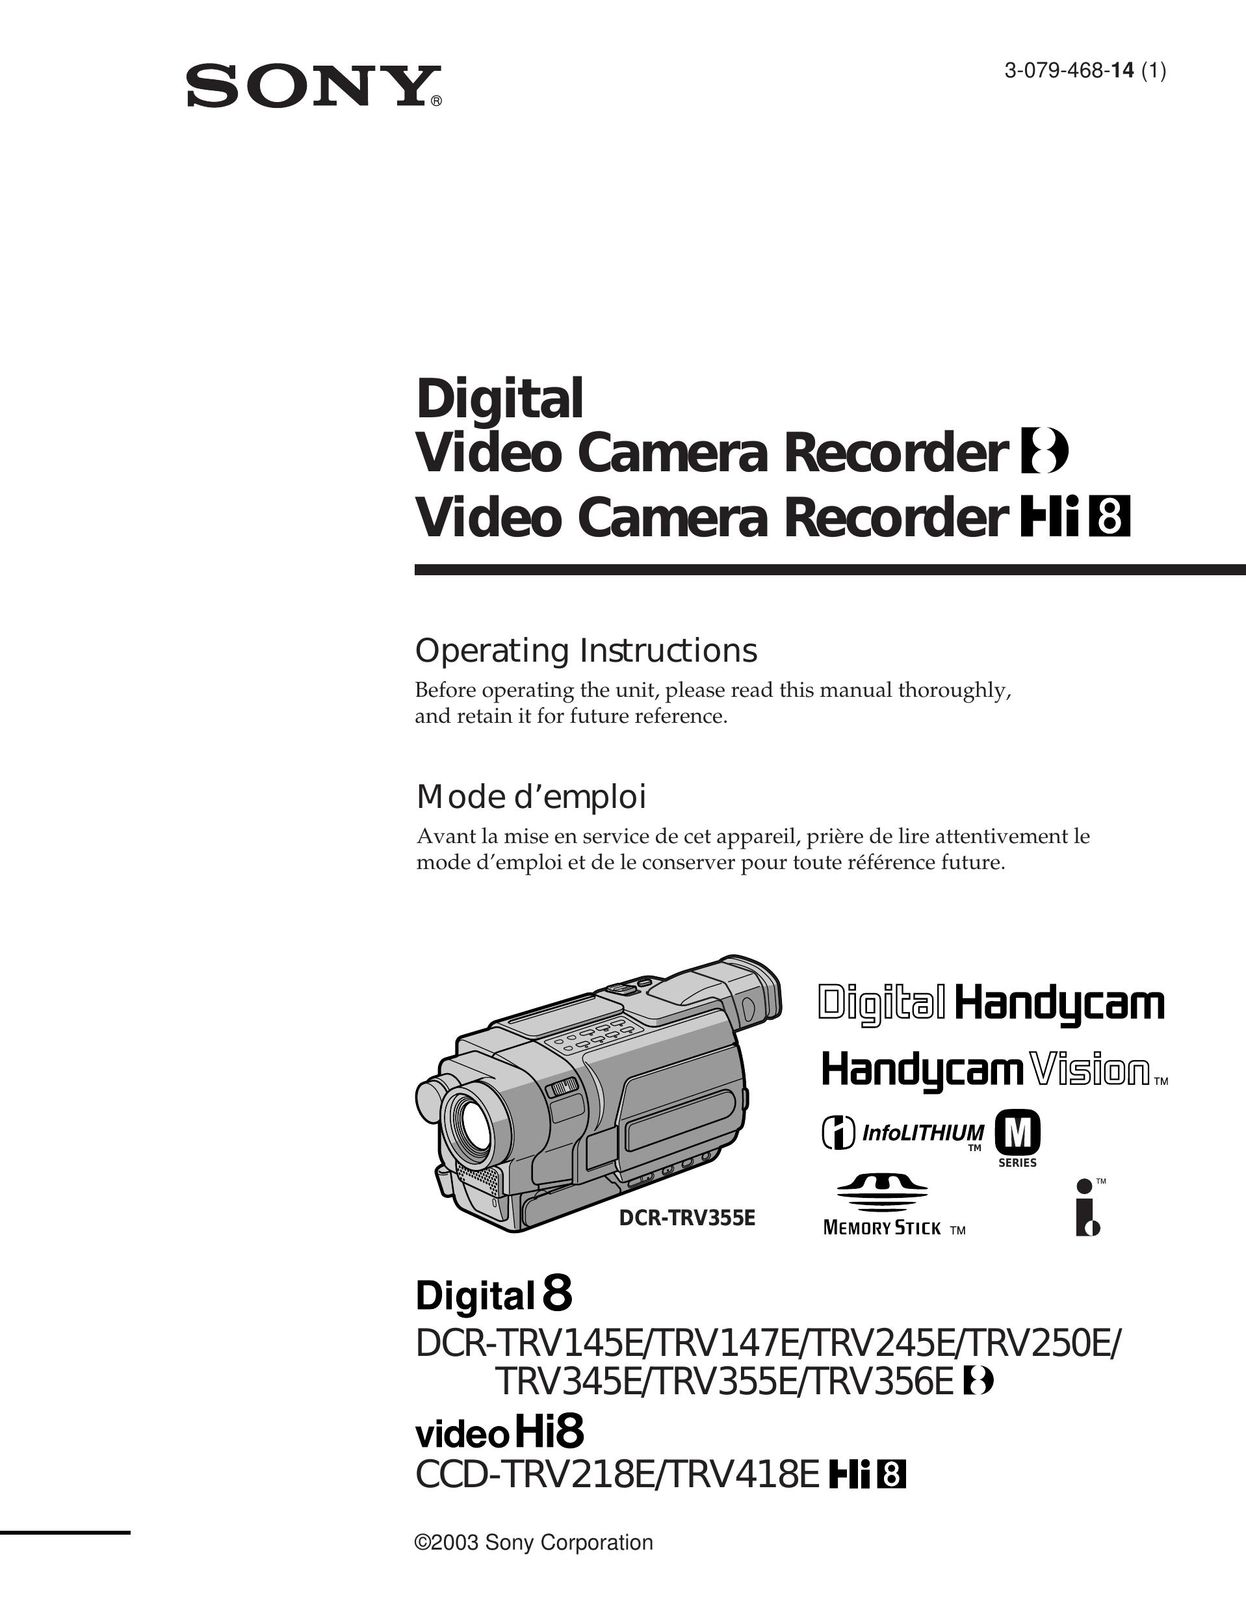 Sony DCR-TRV355E VCR User Manual